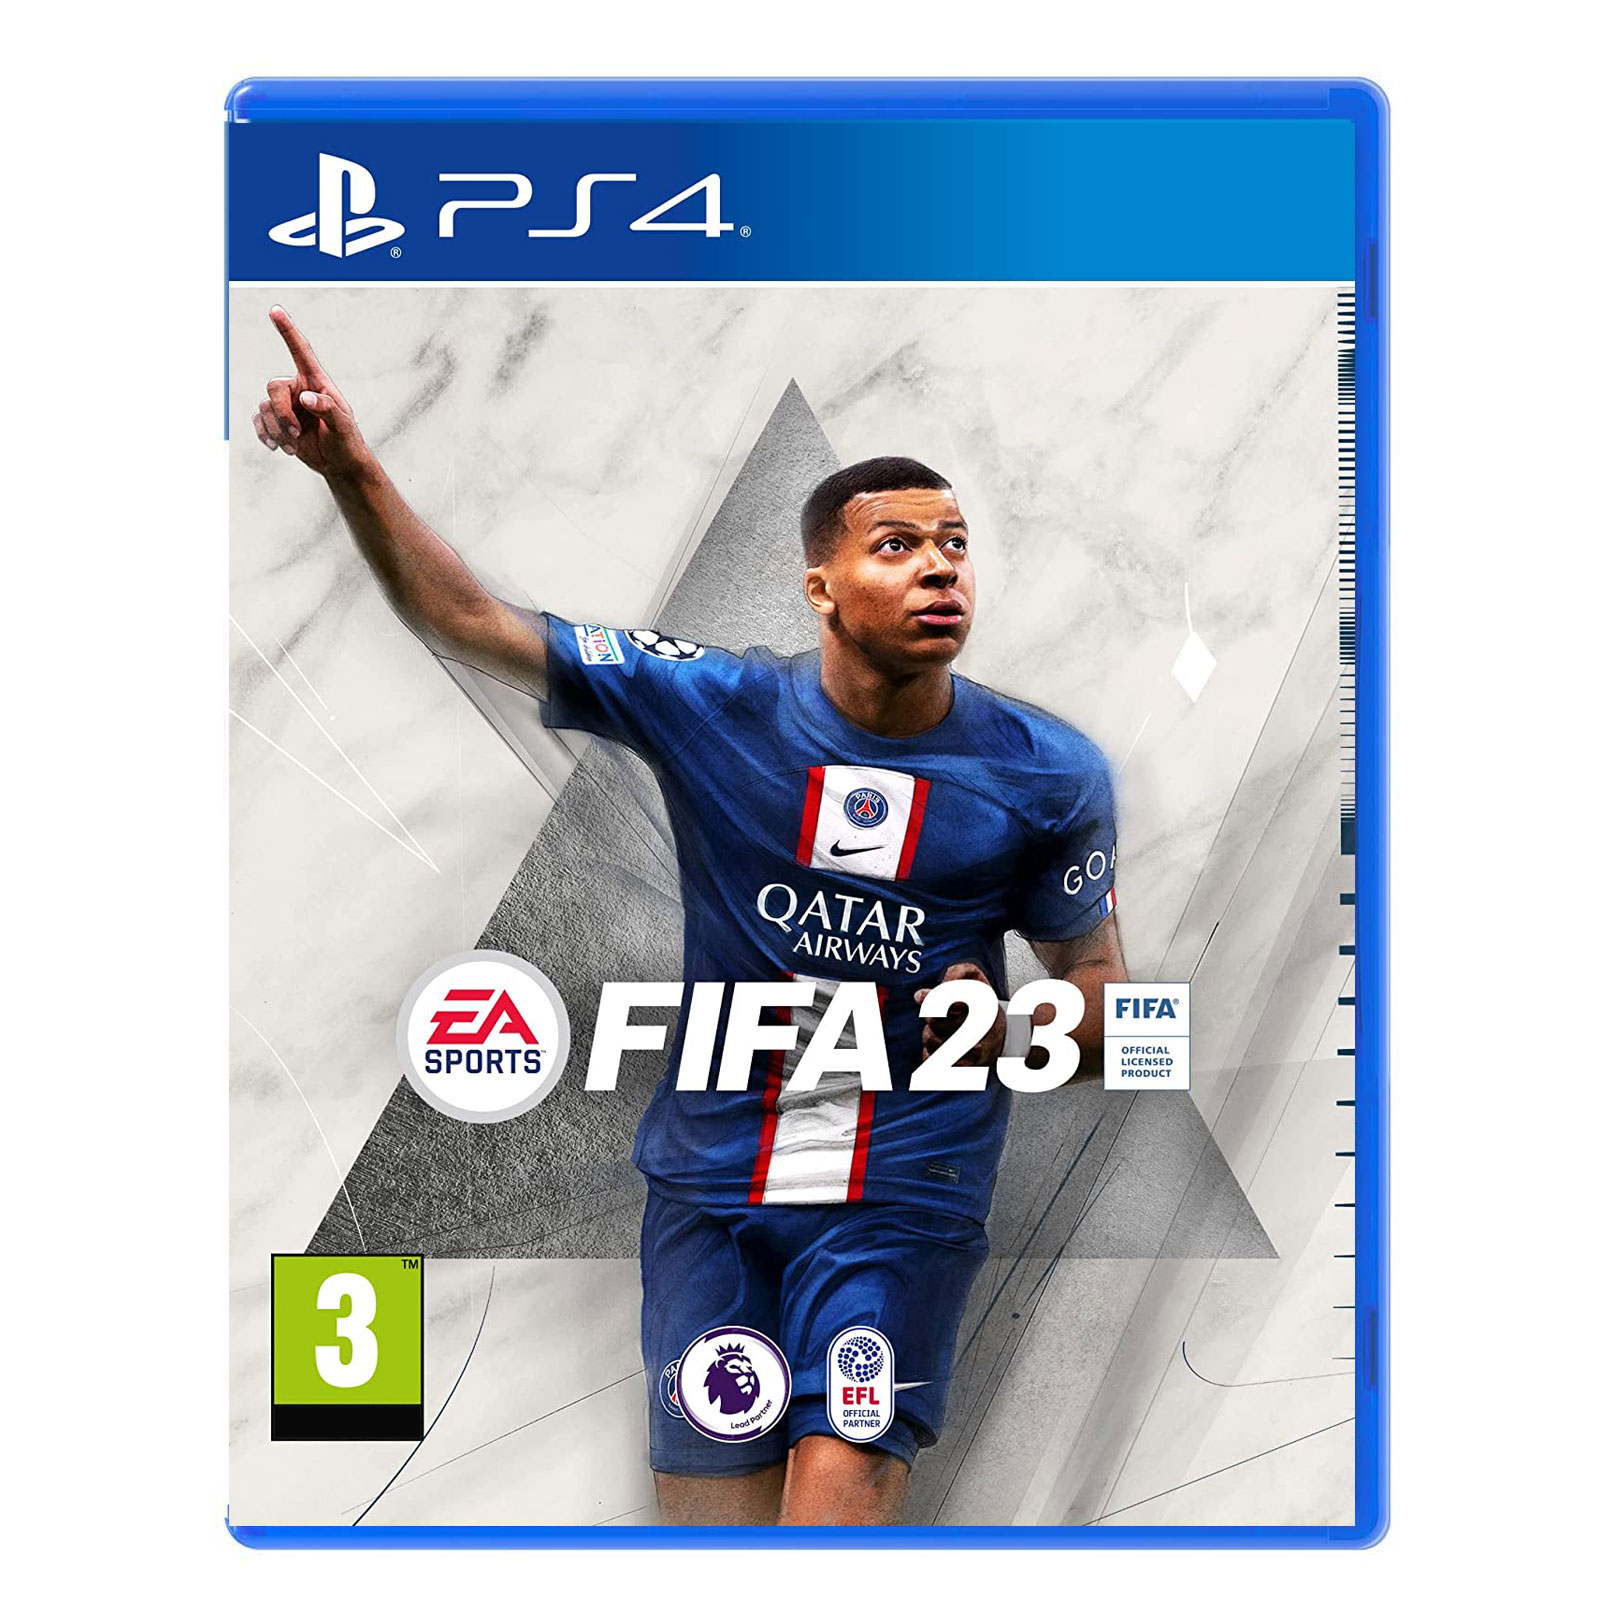 نکته خرید - قیمت روز بازی FIFA 23 مخصوص PS4 خرید